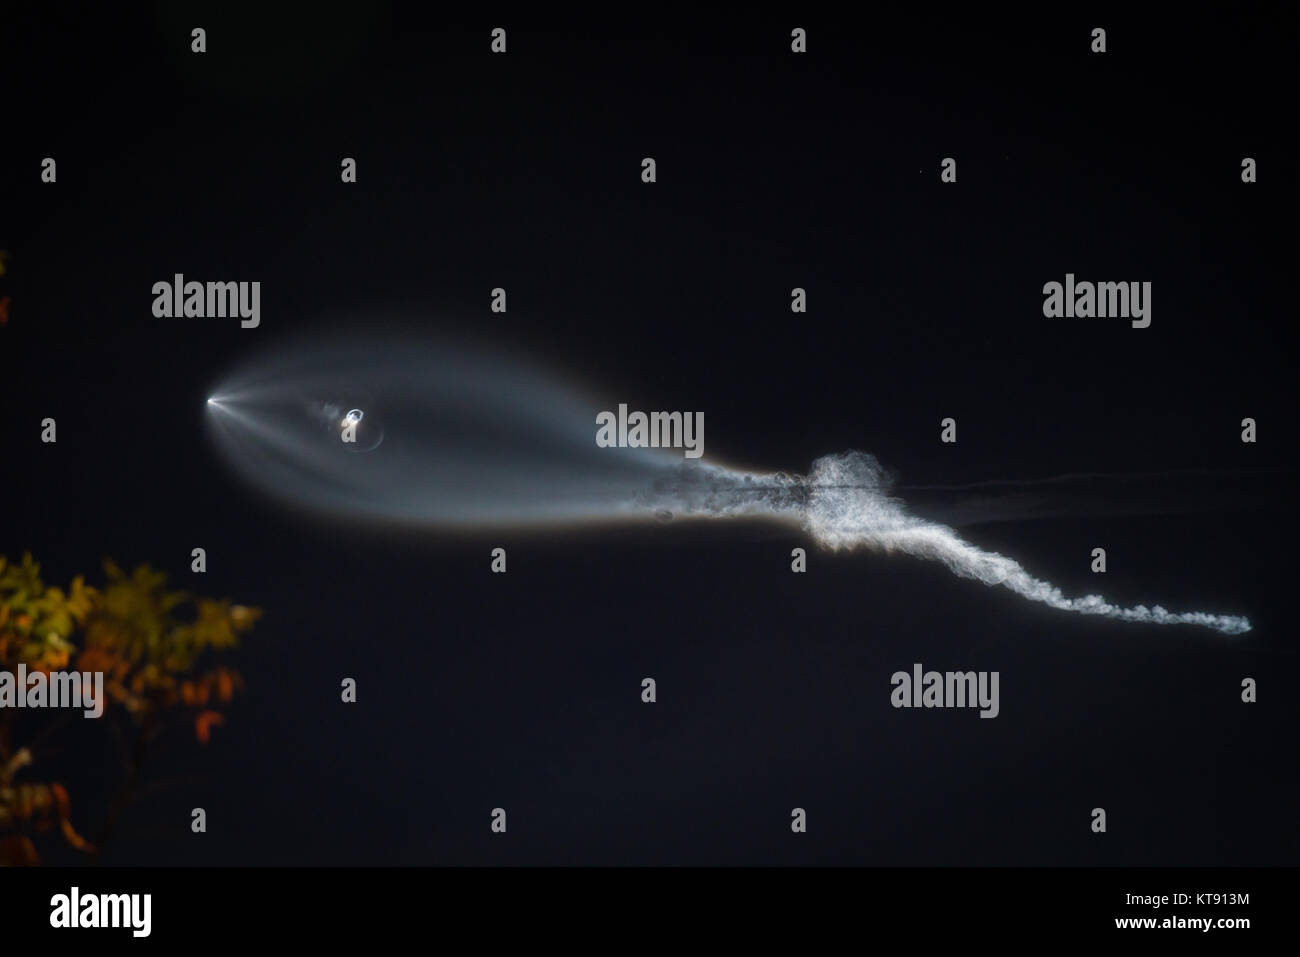 Lanzamiento del cohete SpaceX Falcon 9 estelas de condensación, visto desde la tierra en East Los Angeles, California, el 22 de diciembre de 2017 Crédito: Jim Newberry/Alamy Live News Foto de stock